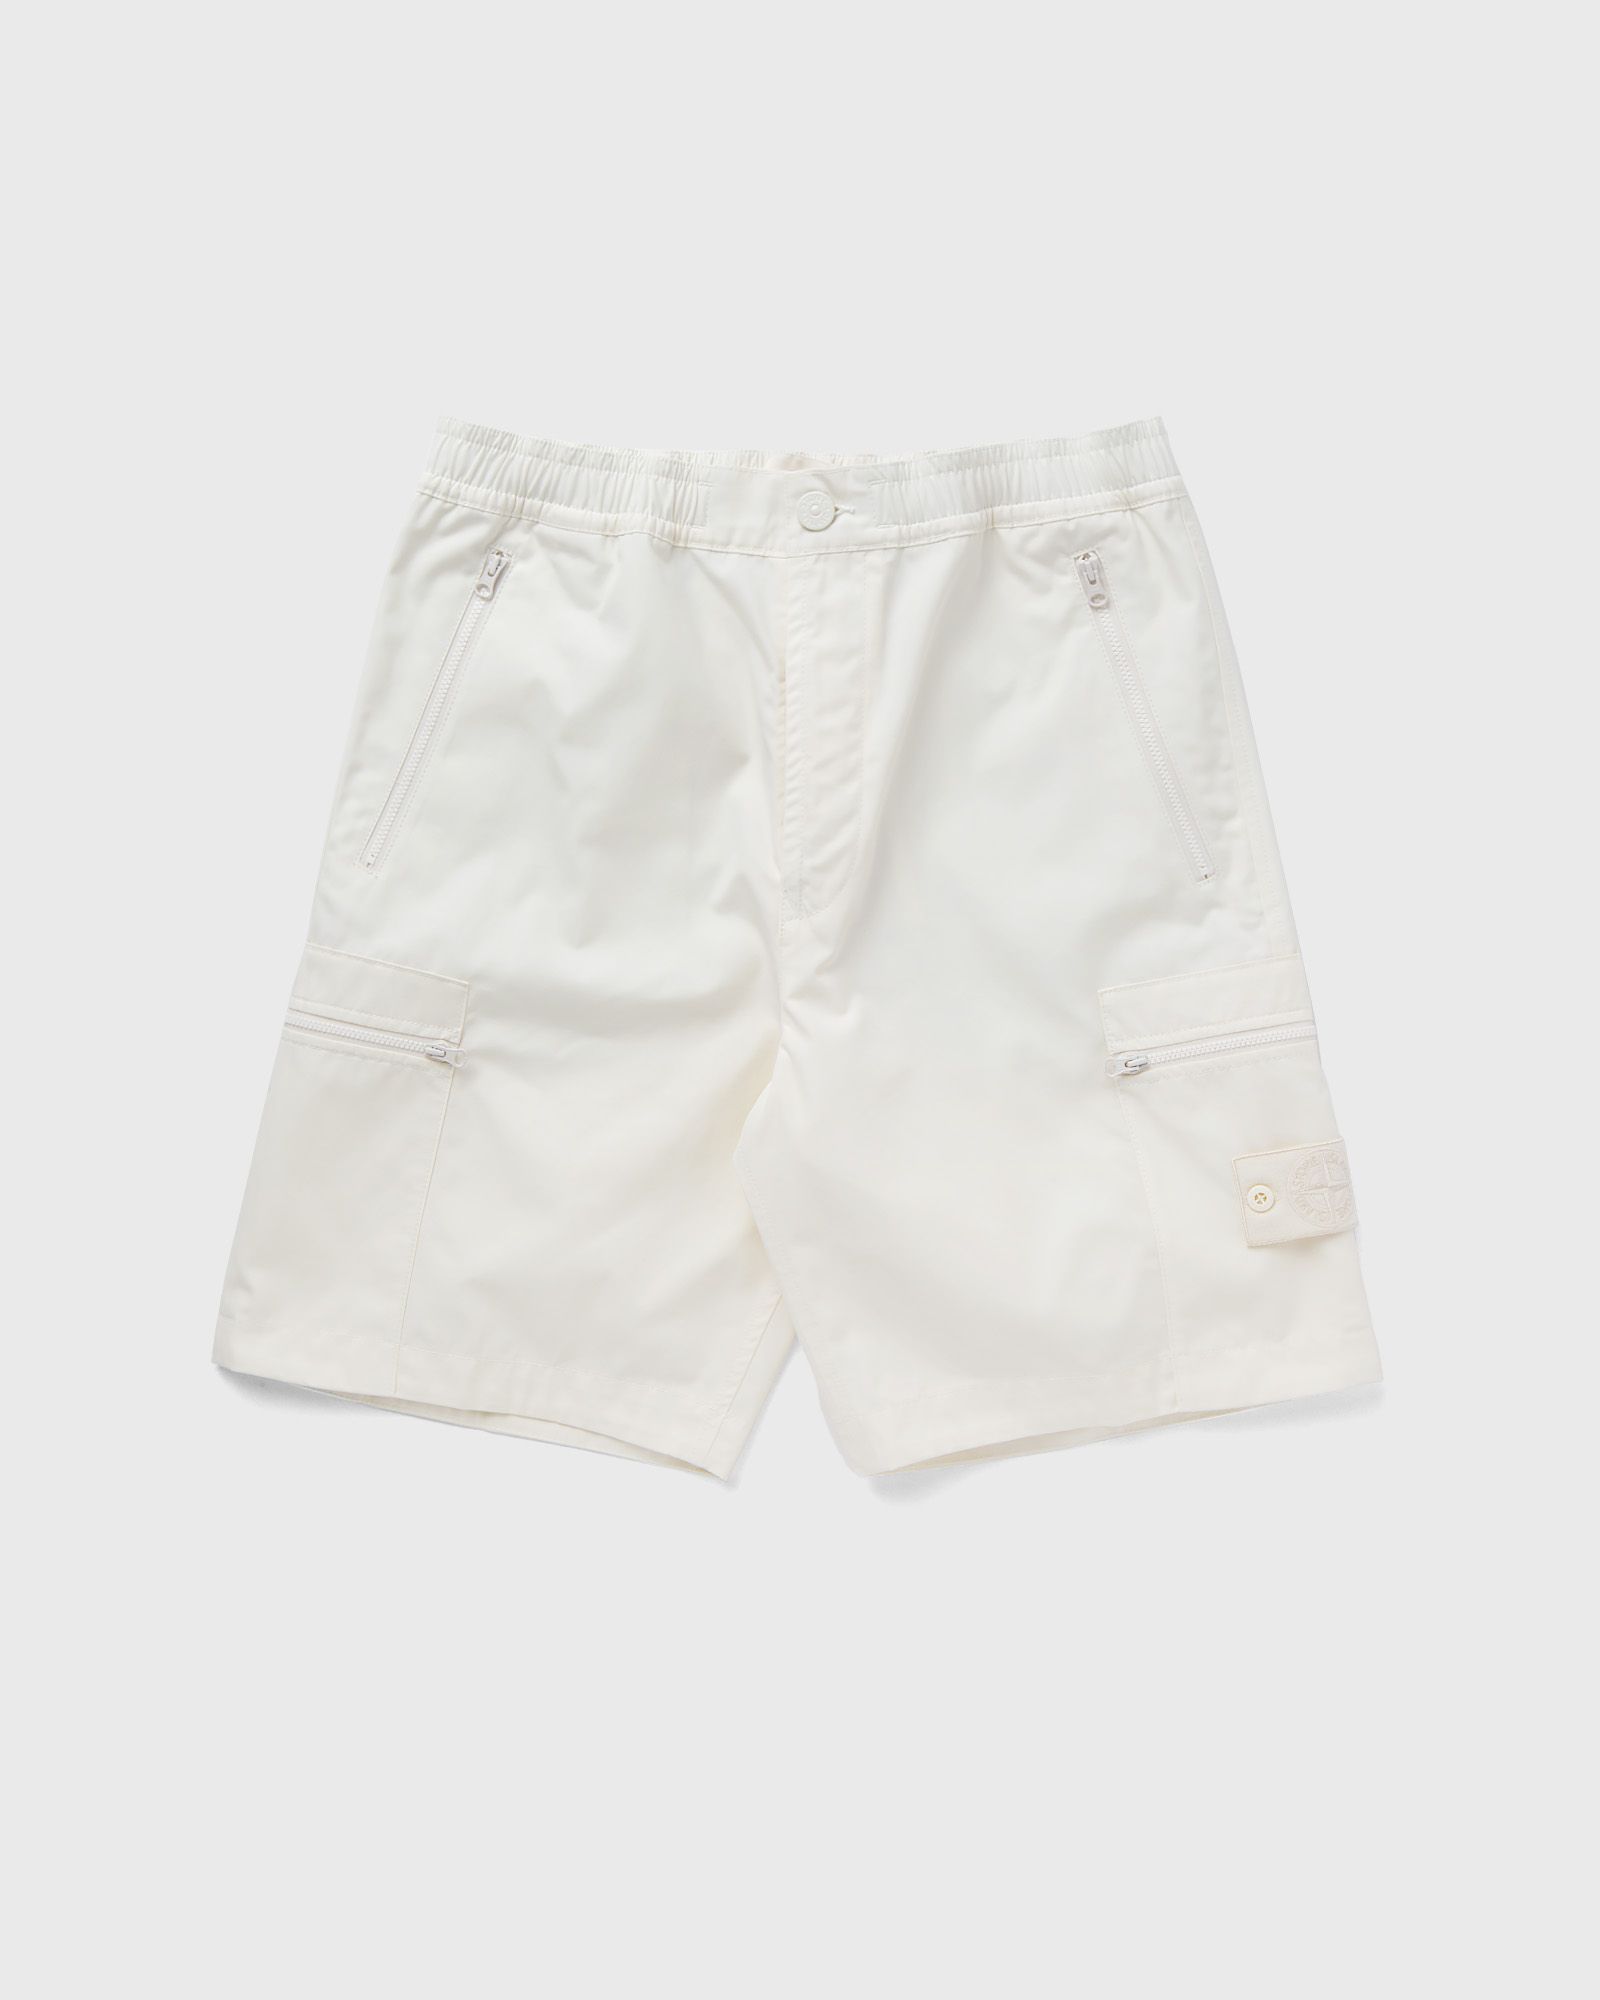 Stone Island BERMUDA SHORTS men Casual Shorts white in Größe:M von Stone Island